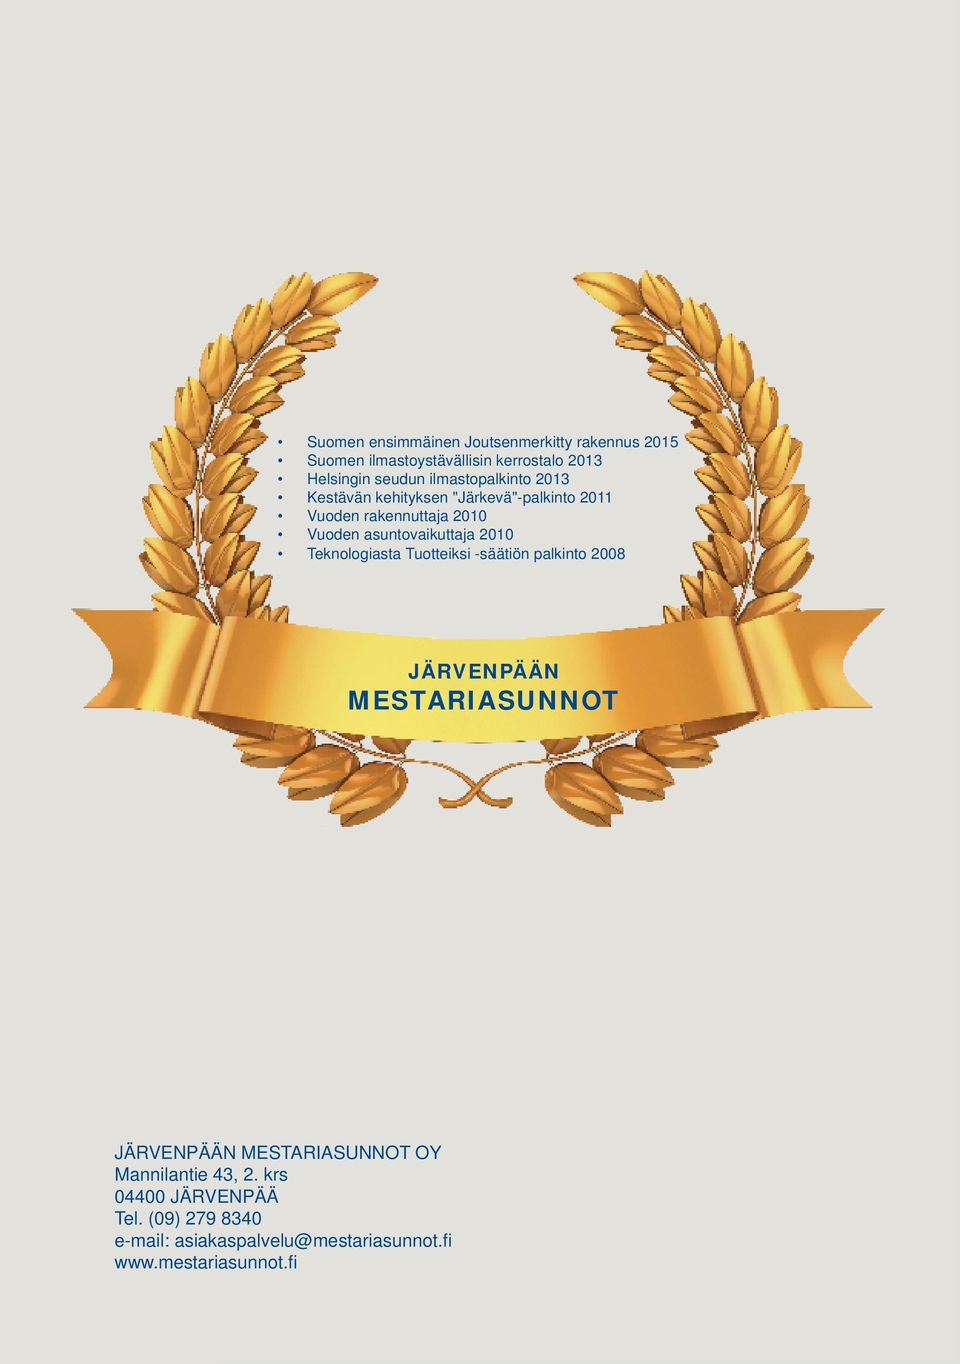 2010 Teknologiasta Tuotteiksi -säätiön palkinto 2008 JÄRVENPÄÄN MESTARIASUNNOT JÄRVENPÄÄN MESTARIASUNNOT OY